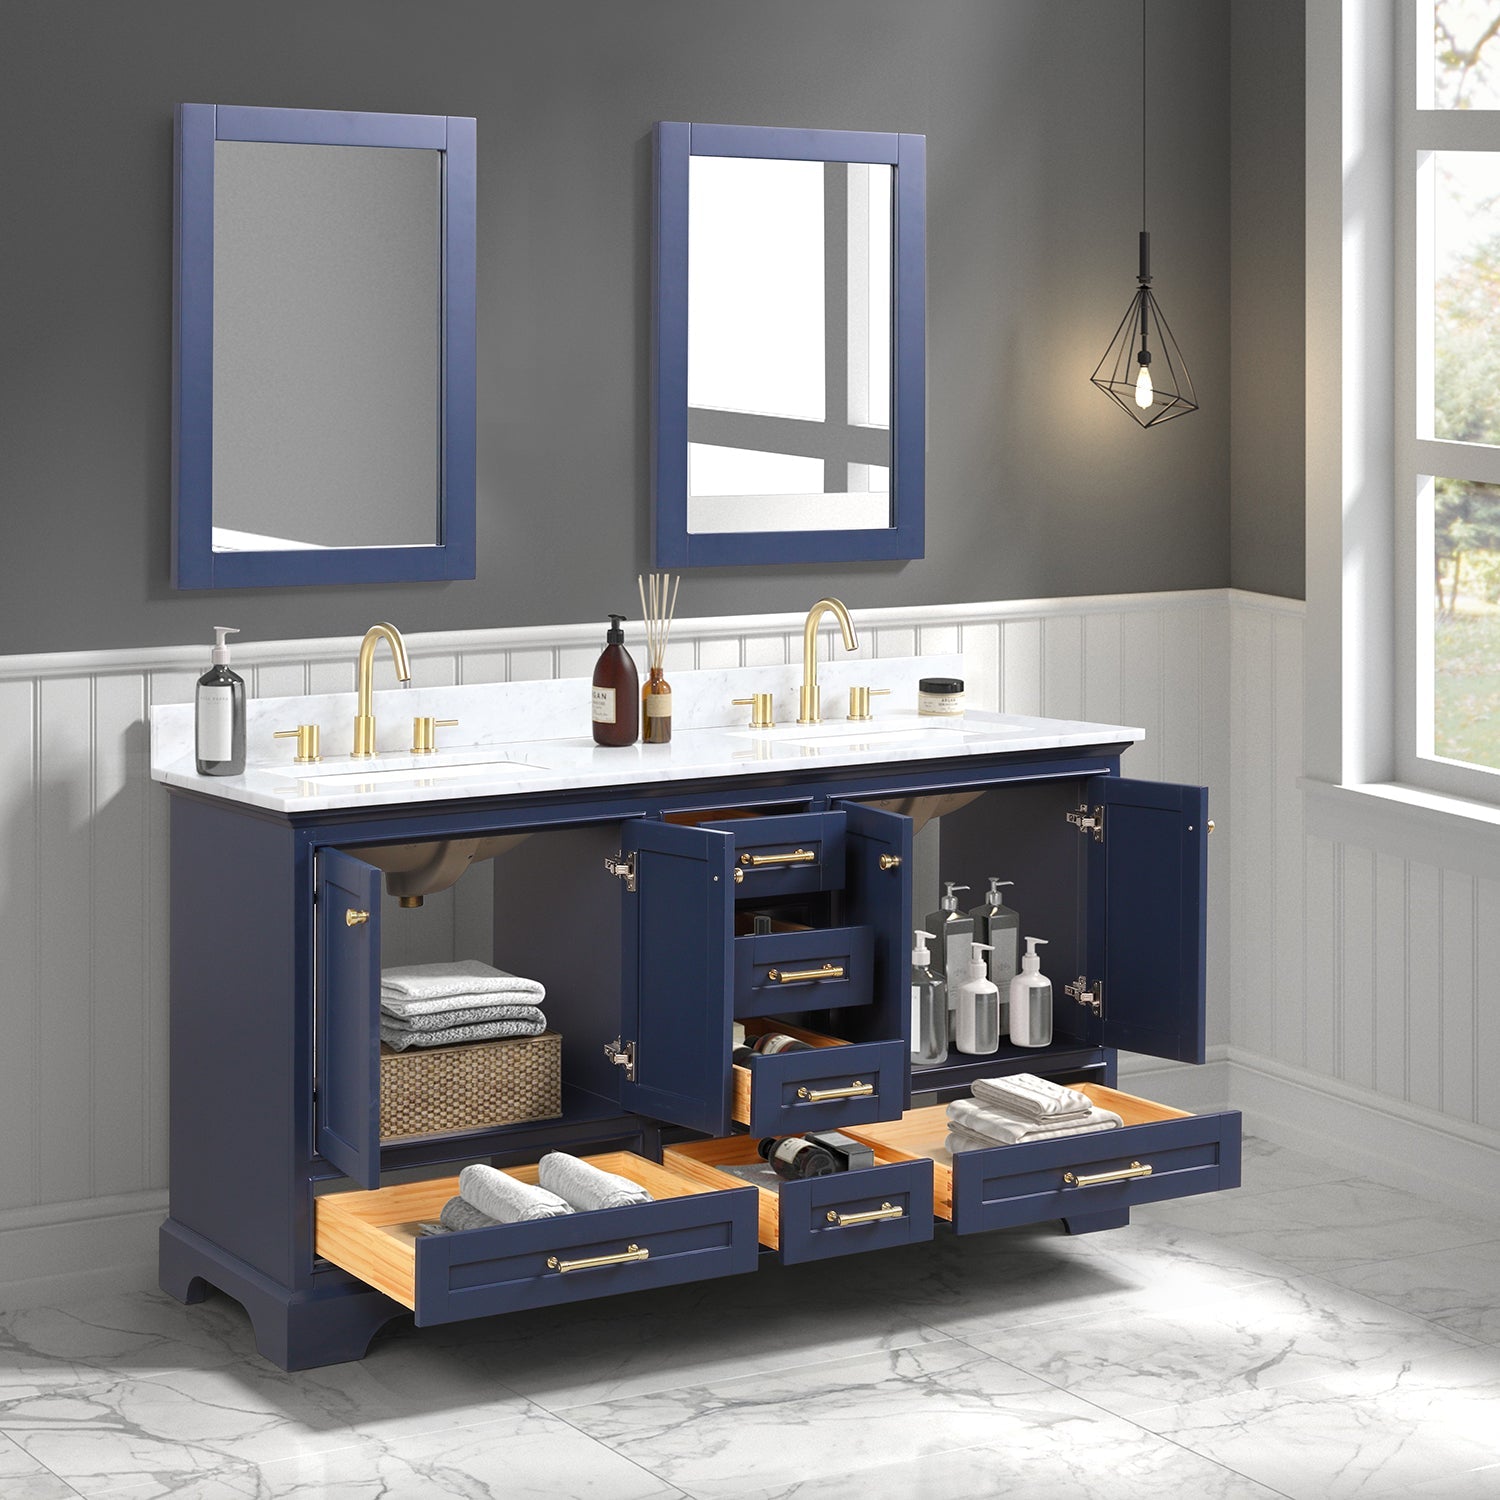 Copenhagen 60" Bathroom Vanity  #size_60"  #color_navy blue